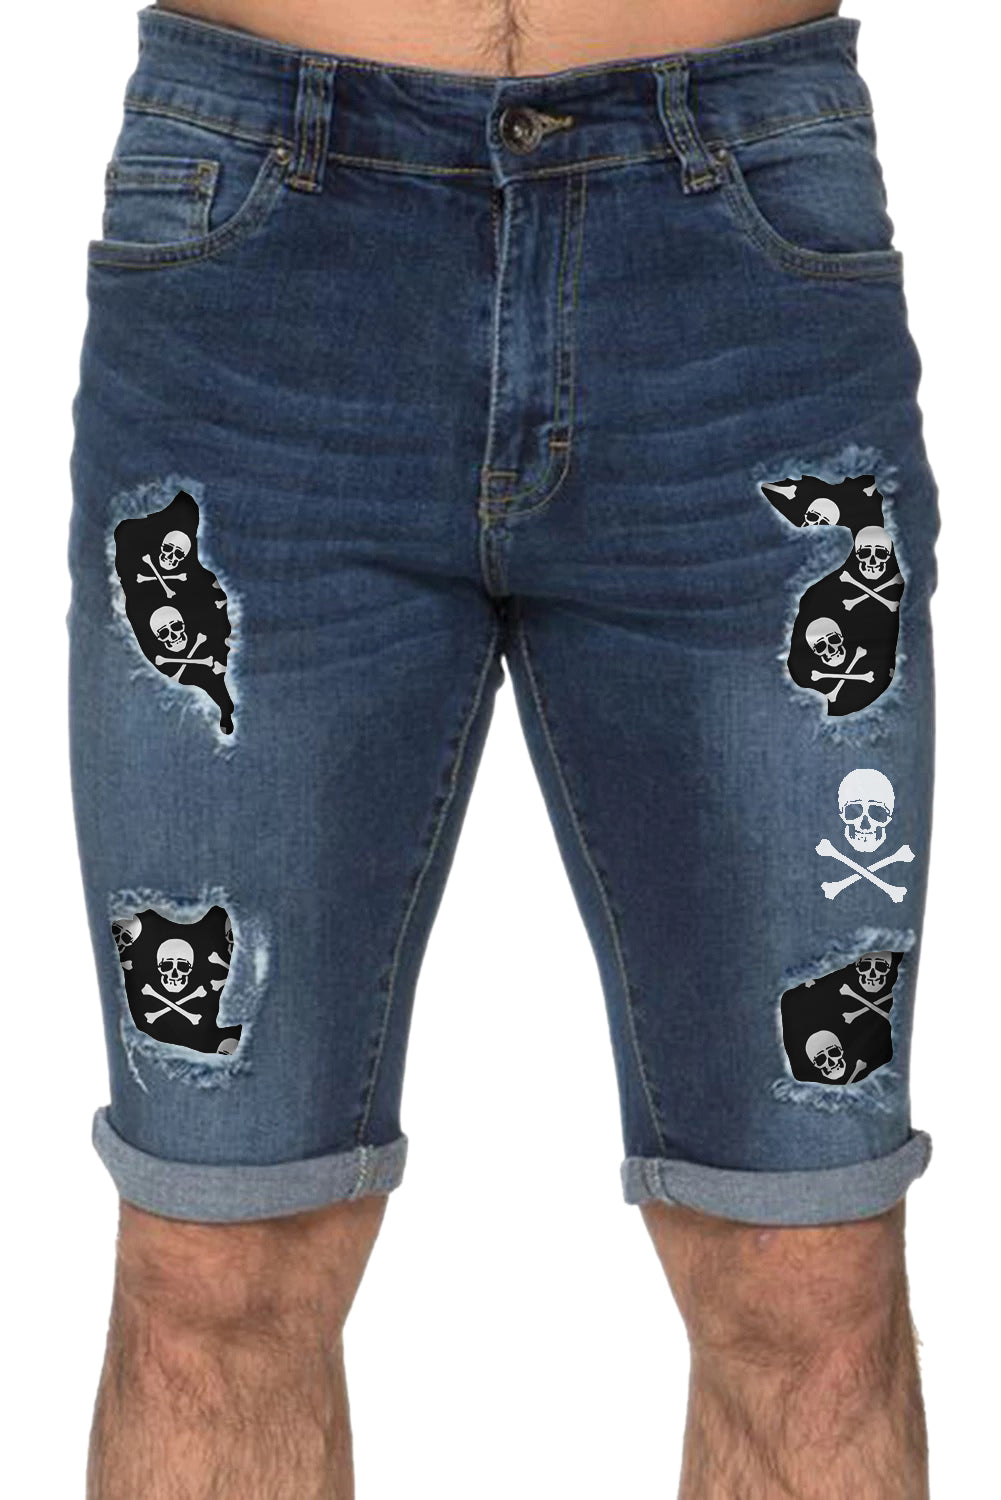 Sky Blue Skull Graphic Patchwork Distressed Skinny Fit Men's Jeans Men's Pants JT's Designer Fashion